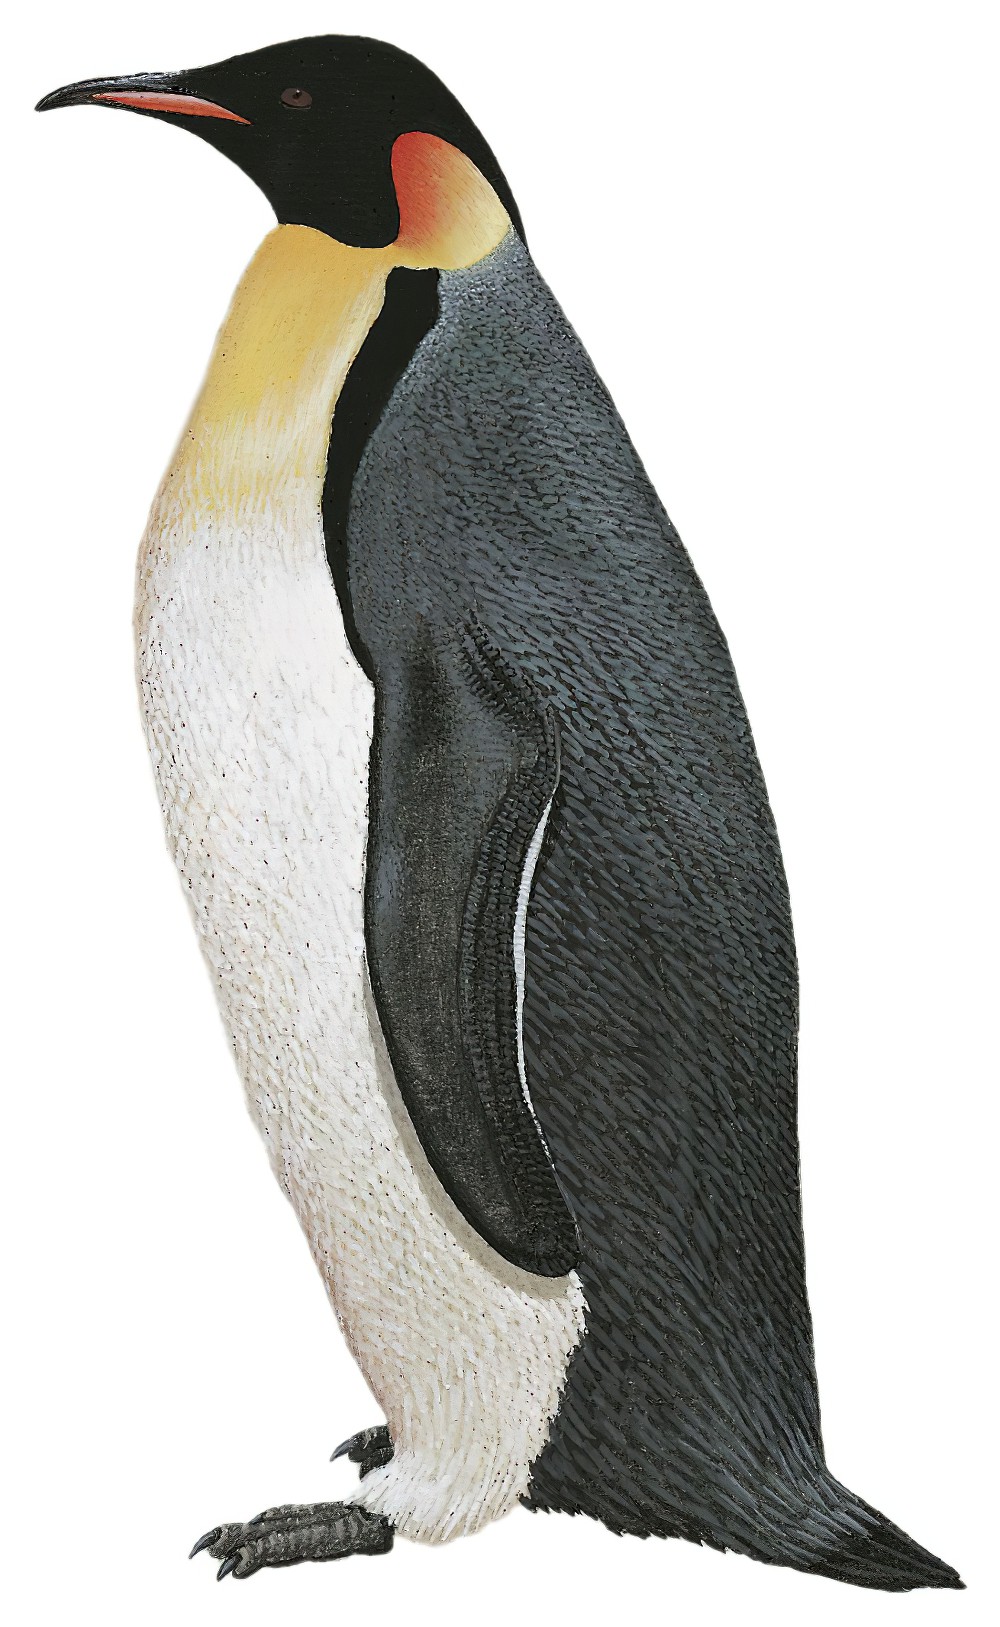 Emperor Penguin / Aptenodytes forsteri